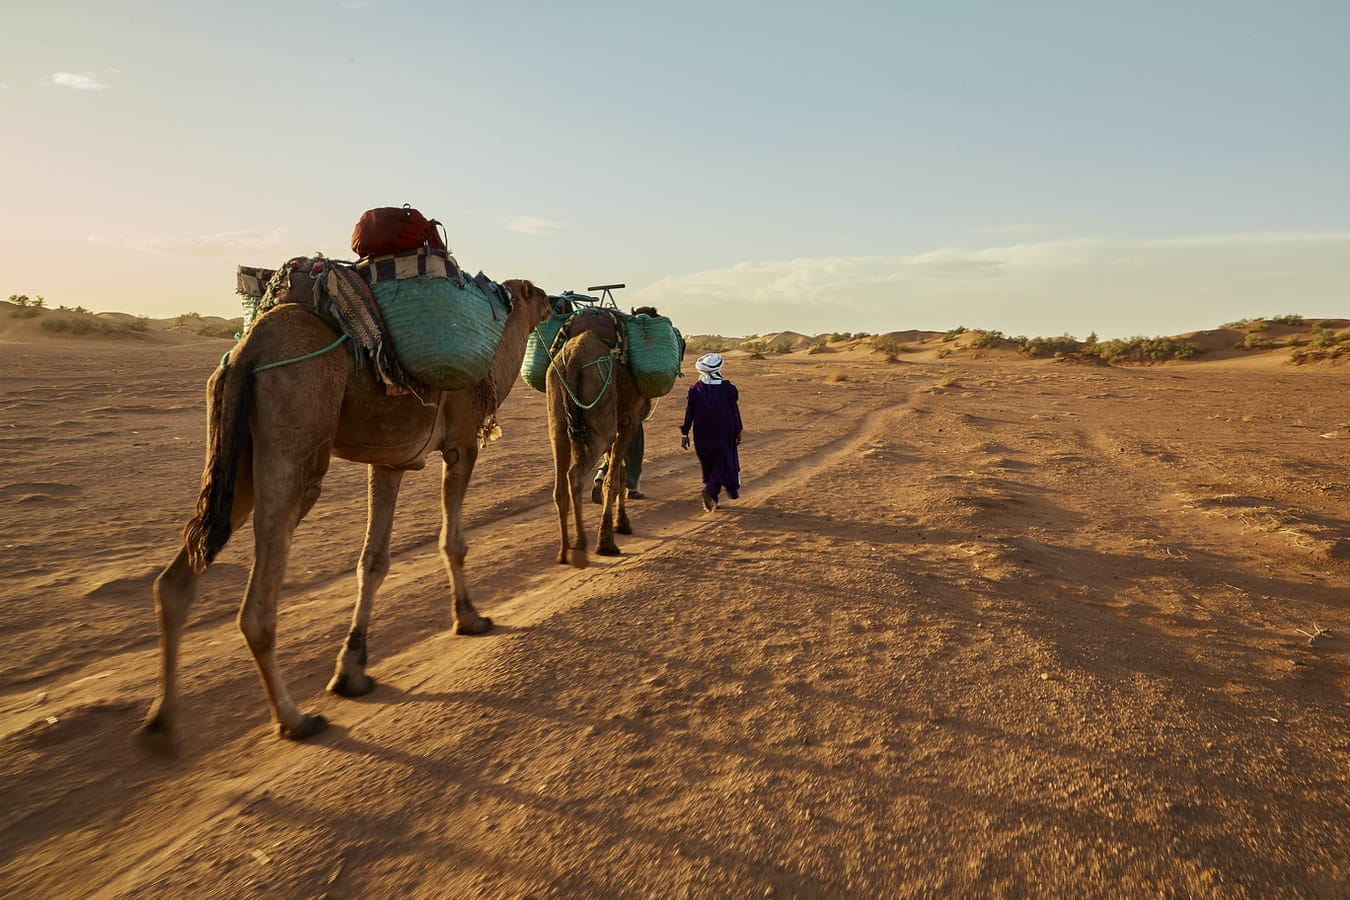 Much more than a desert: A trip into the Sahara